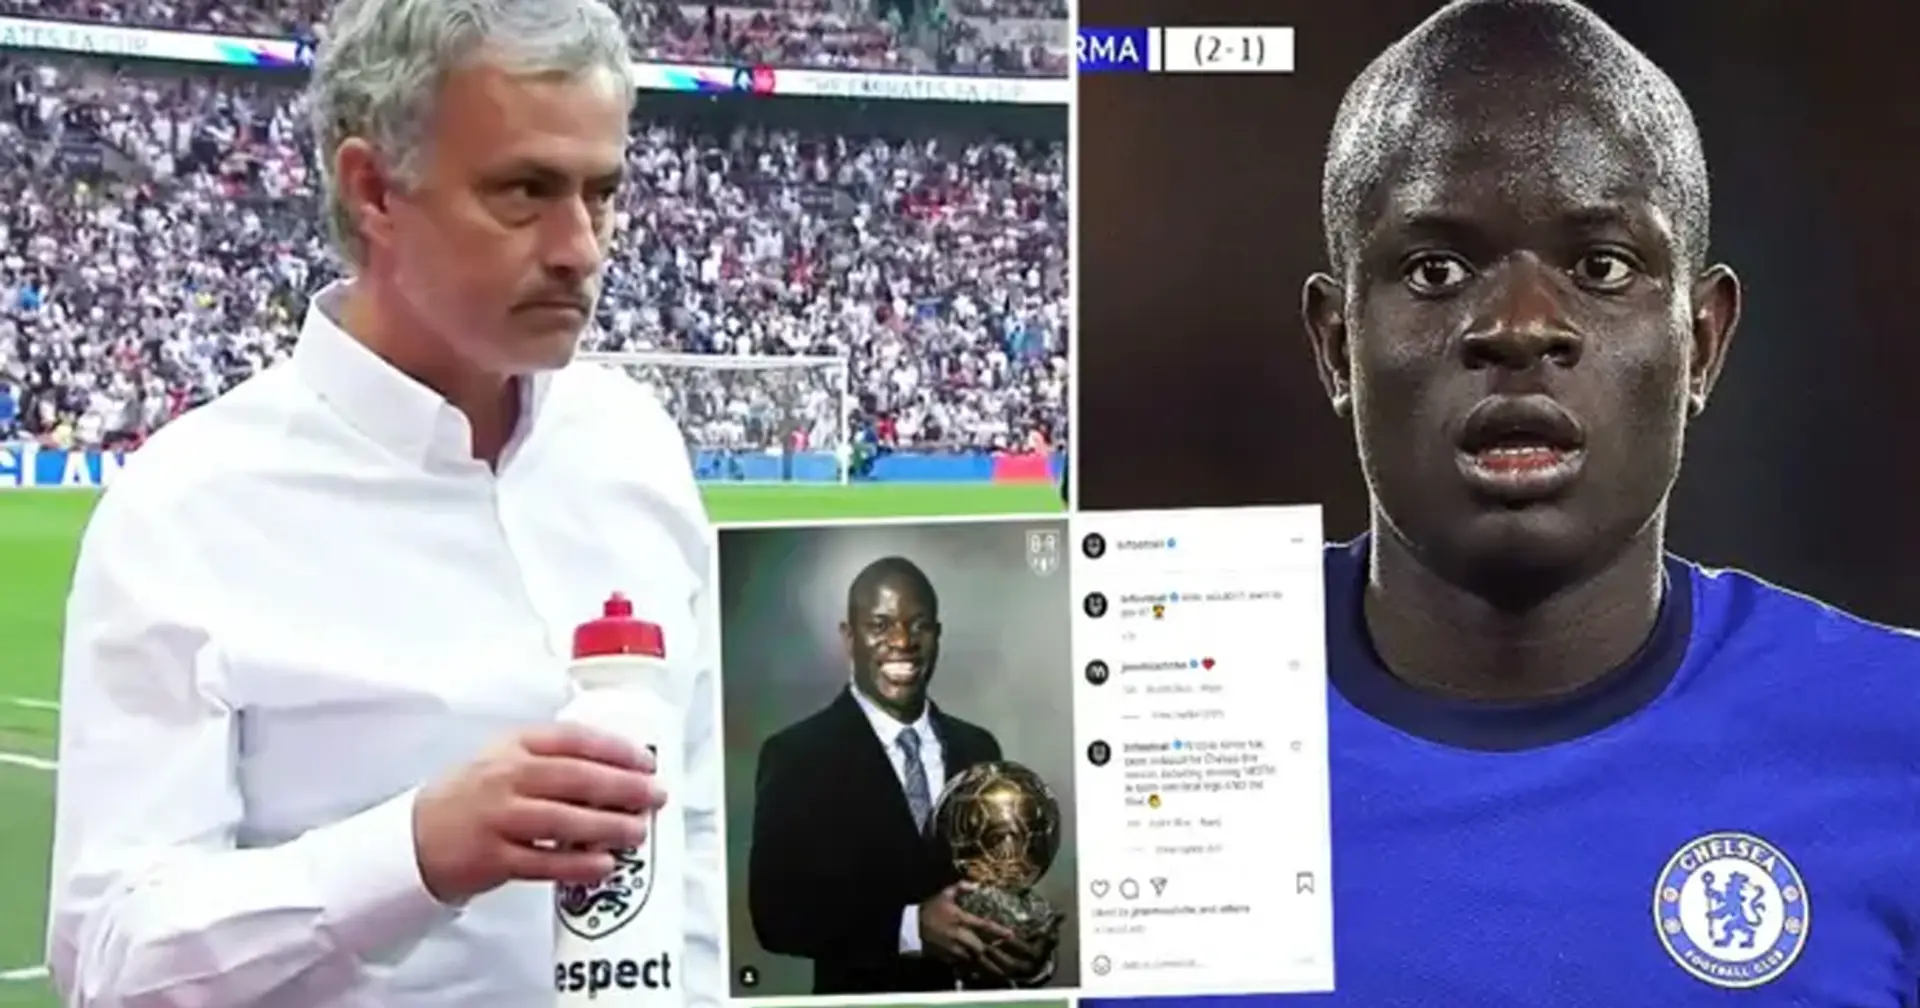 BRILLANTE: José Mourinho deja un comentario en la publicación viral de Instagram sobre N'Golo Kante